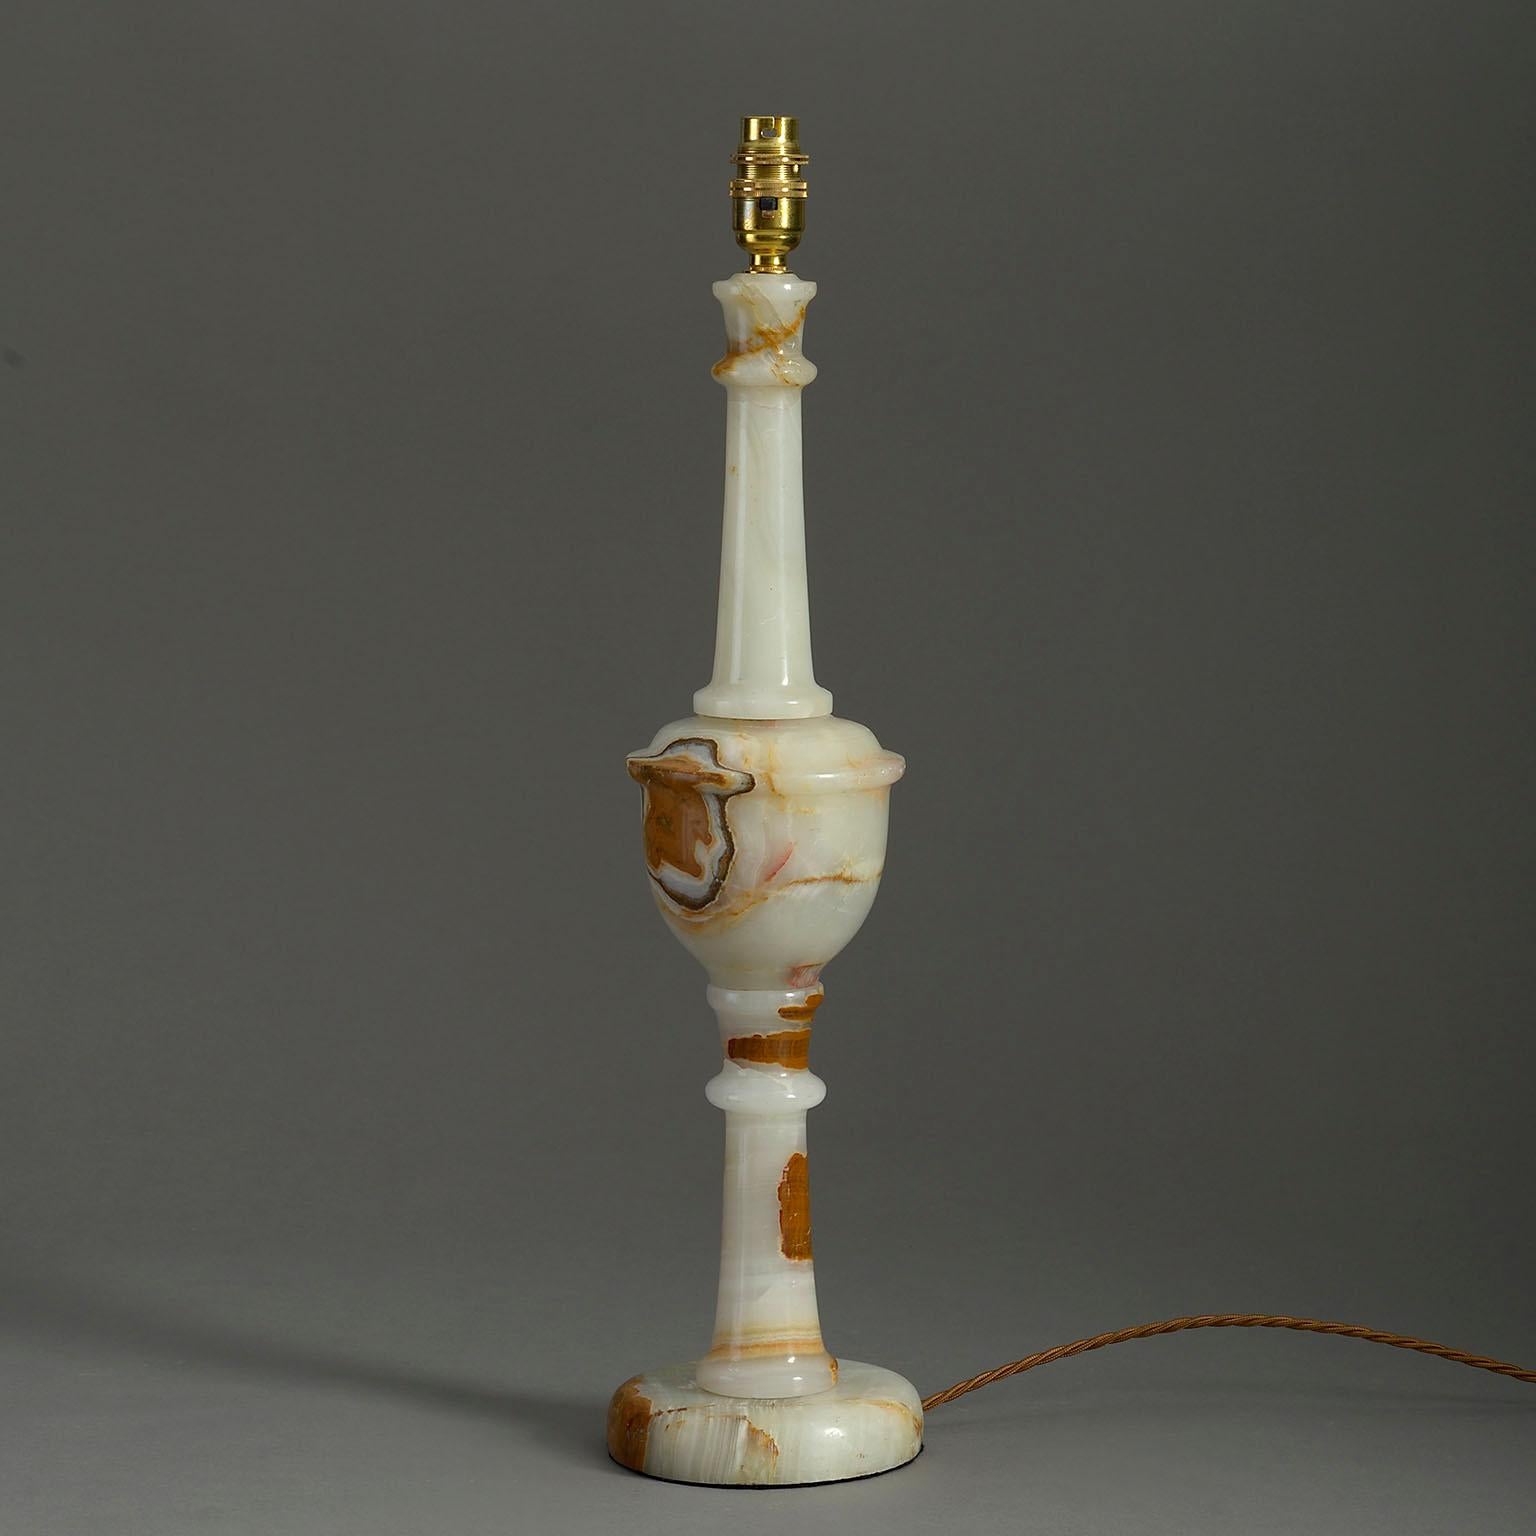 Eine hohe gedrechselte Alabaster-Säulenlampe aus der Mitte des zwanzigsten Jahrhunderts mit reicher Maserung.

Die Abmessungen beziehen sich nur auf die Alabasterteile.

Verkabelt nach britischem Standard. Diese Lampe kann nach allen internationalen